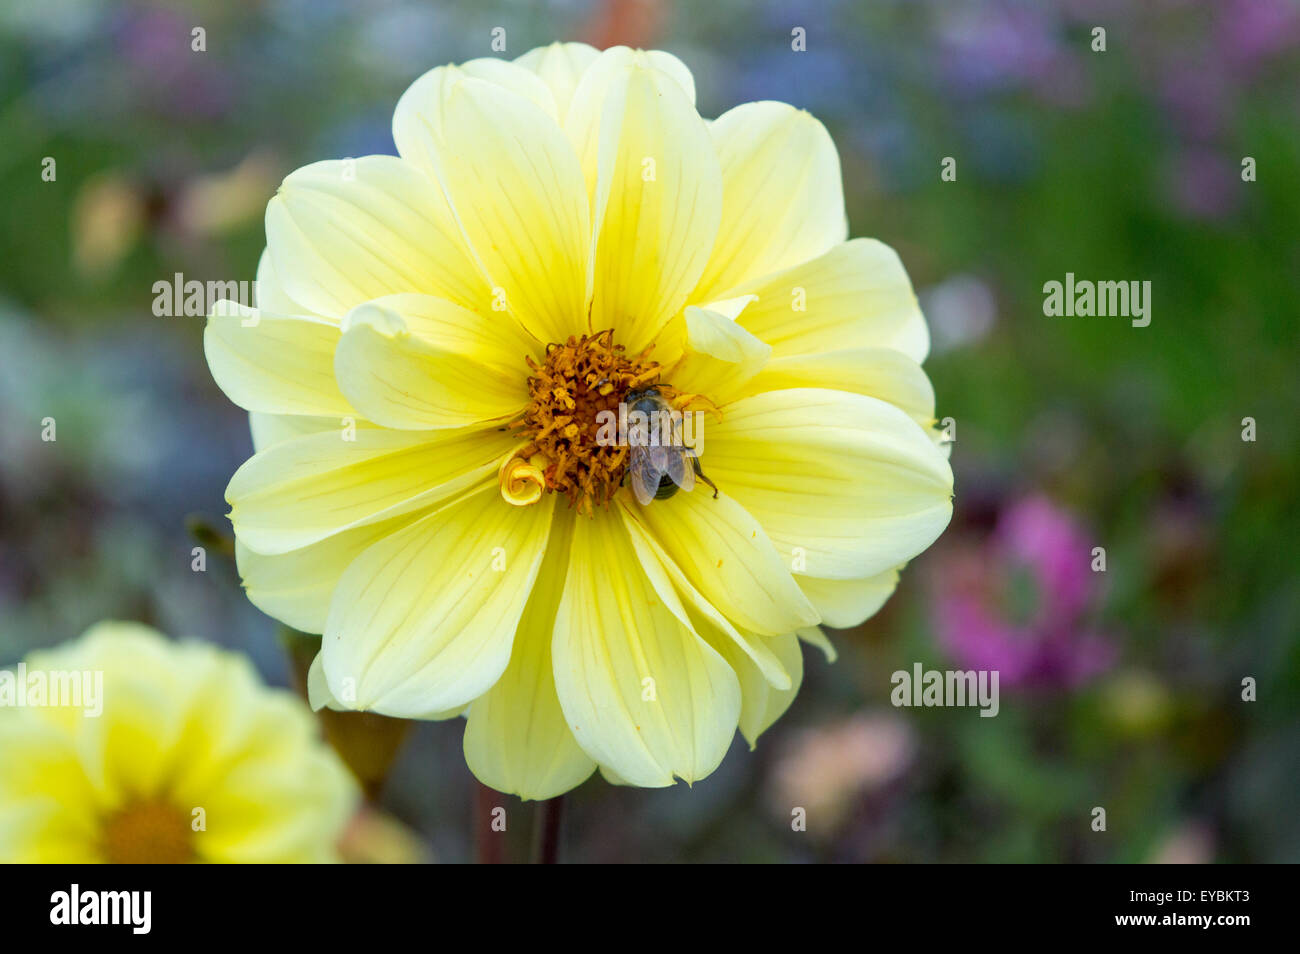 Hermosa flor amarilla con una abeja recogiendo el néctar de las flores Foto de stock